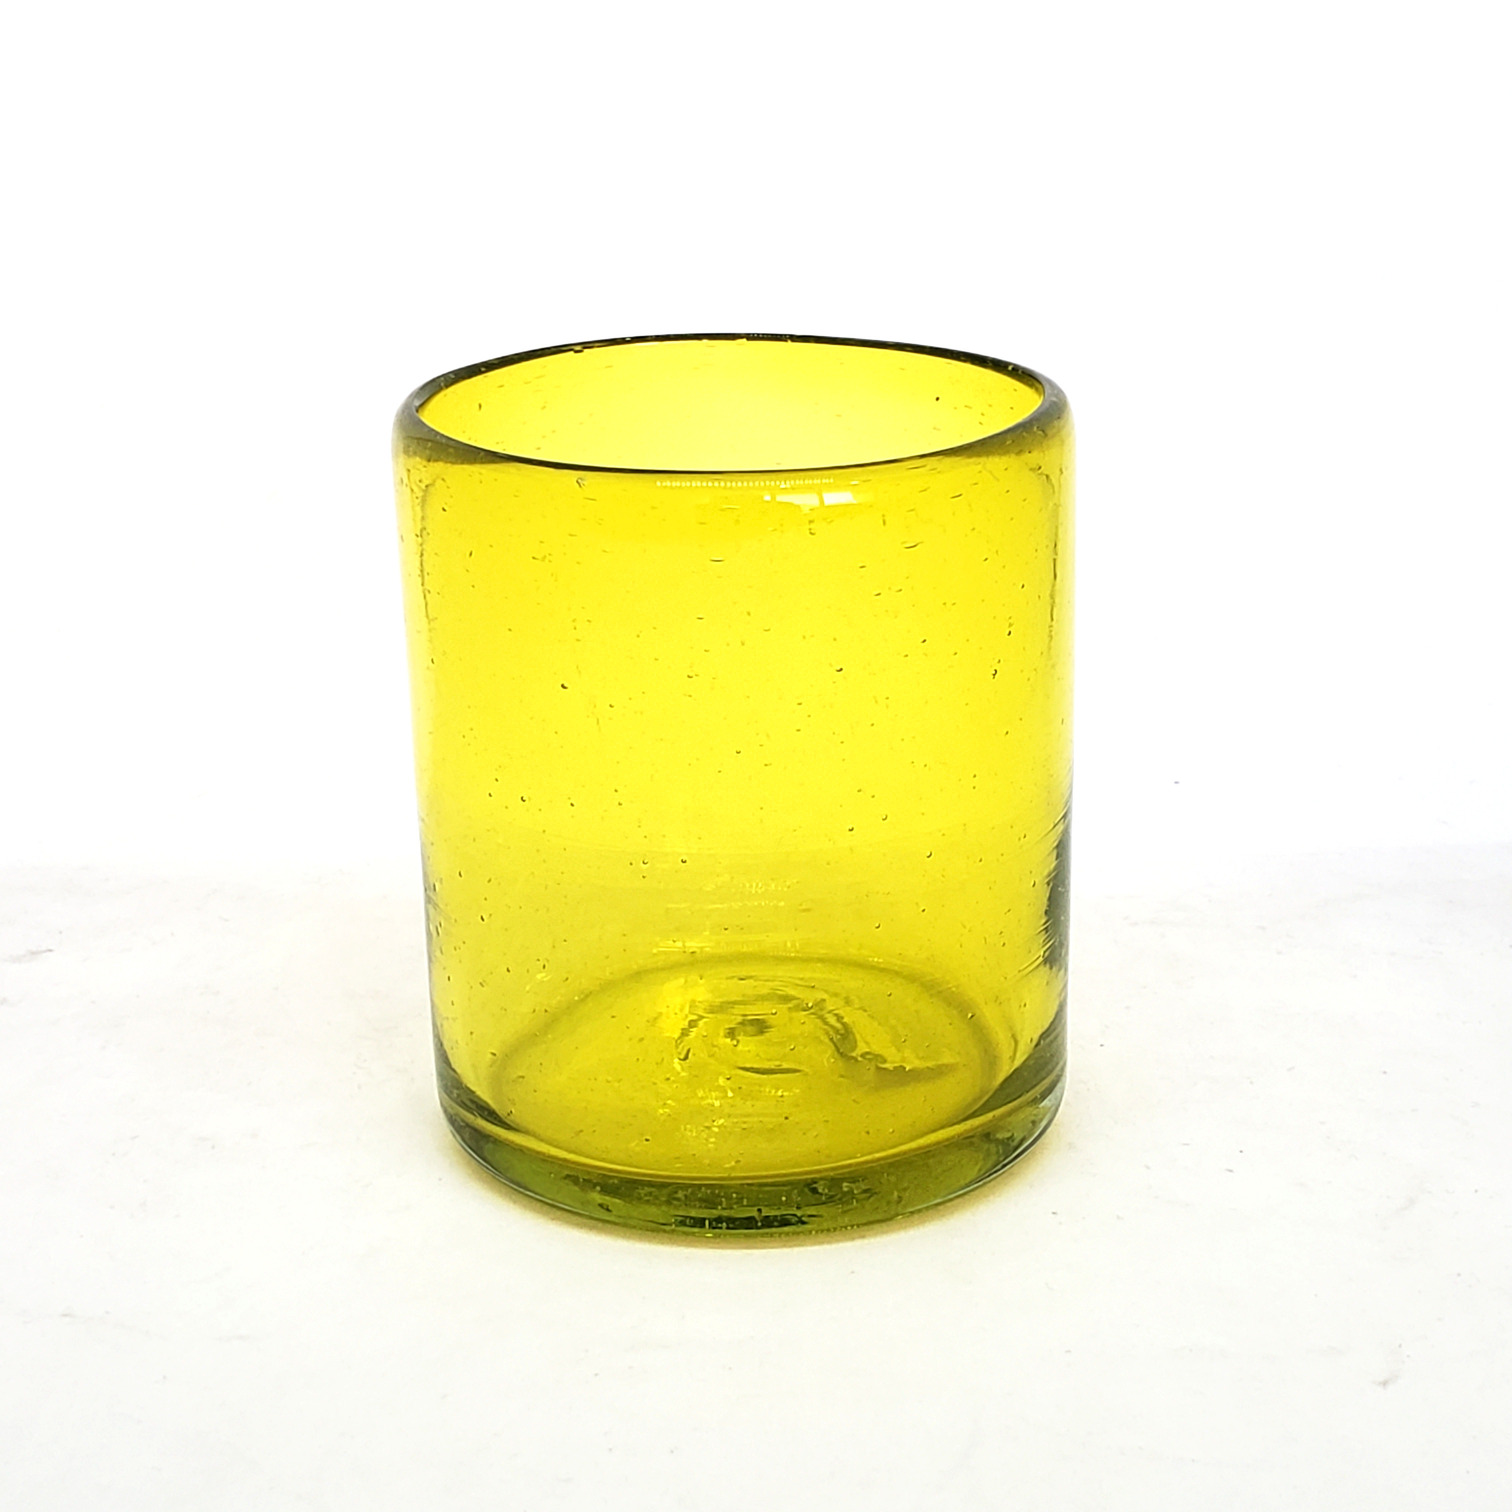 VIDRIO SOPLADO al Mayoreo / s 9 oz color Amarillo Sólido (set de 6) / Éstos artesanales vasos le darán un toque colorido a su bebida favorita.